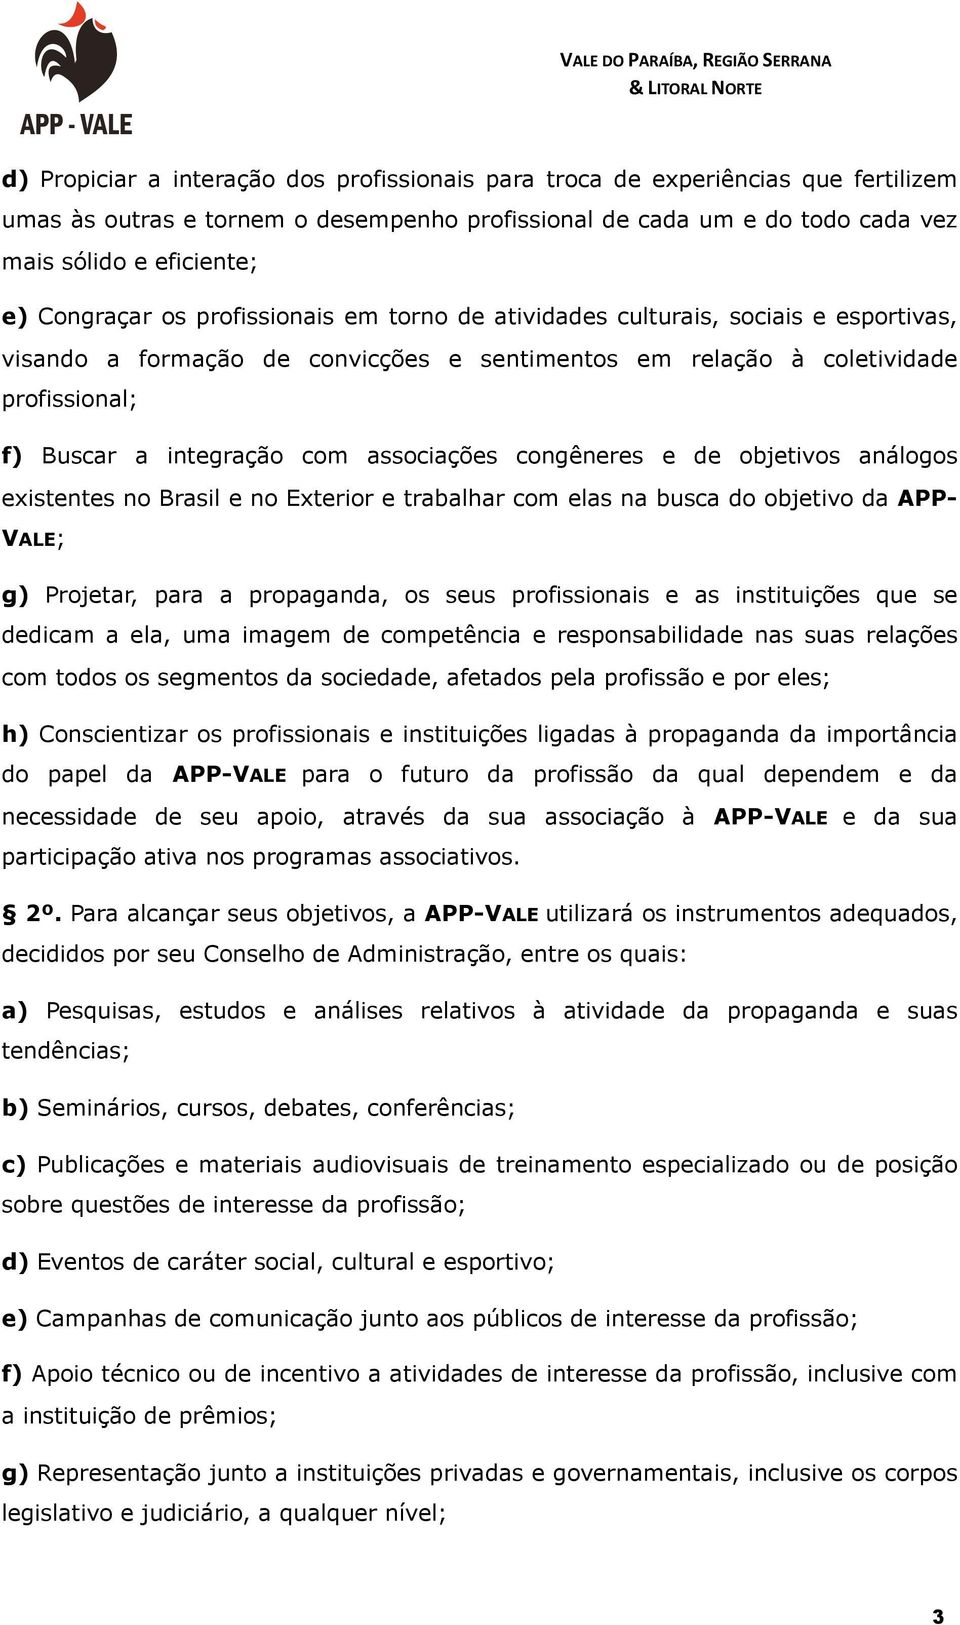 associações congêneres e de objetivos análogos existentes no Brasil e no Exterior e trabalhar com elas na busca do objetivo da APP- VALE; g) Projetar, para a propaganda, os seus profissionais e as